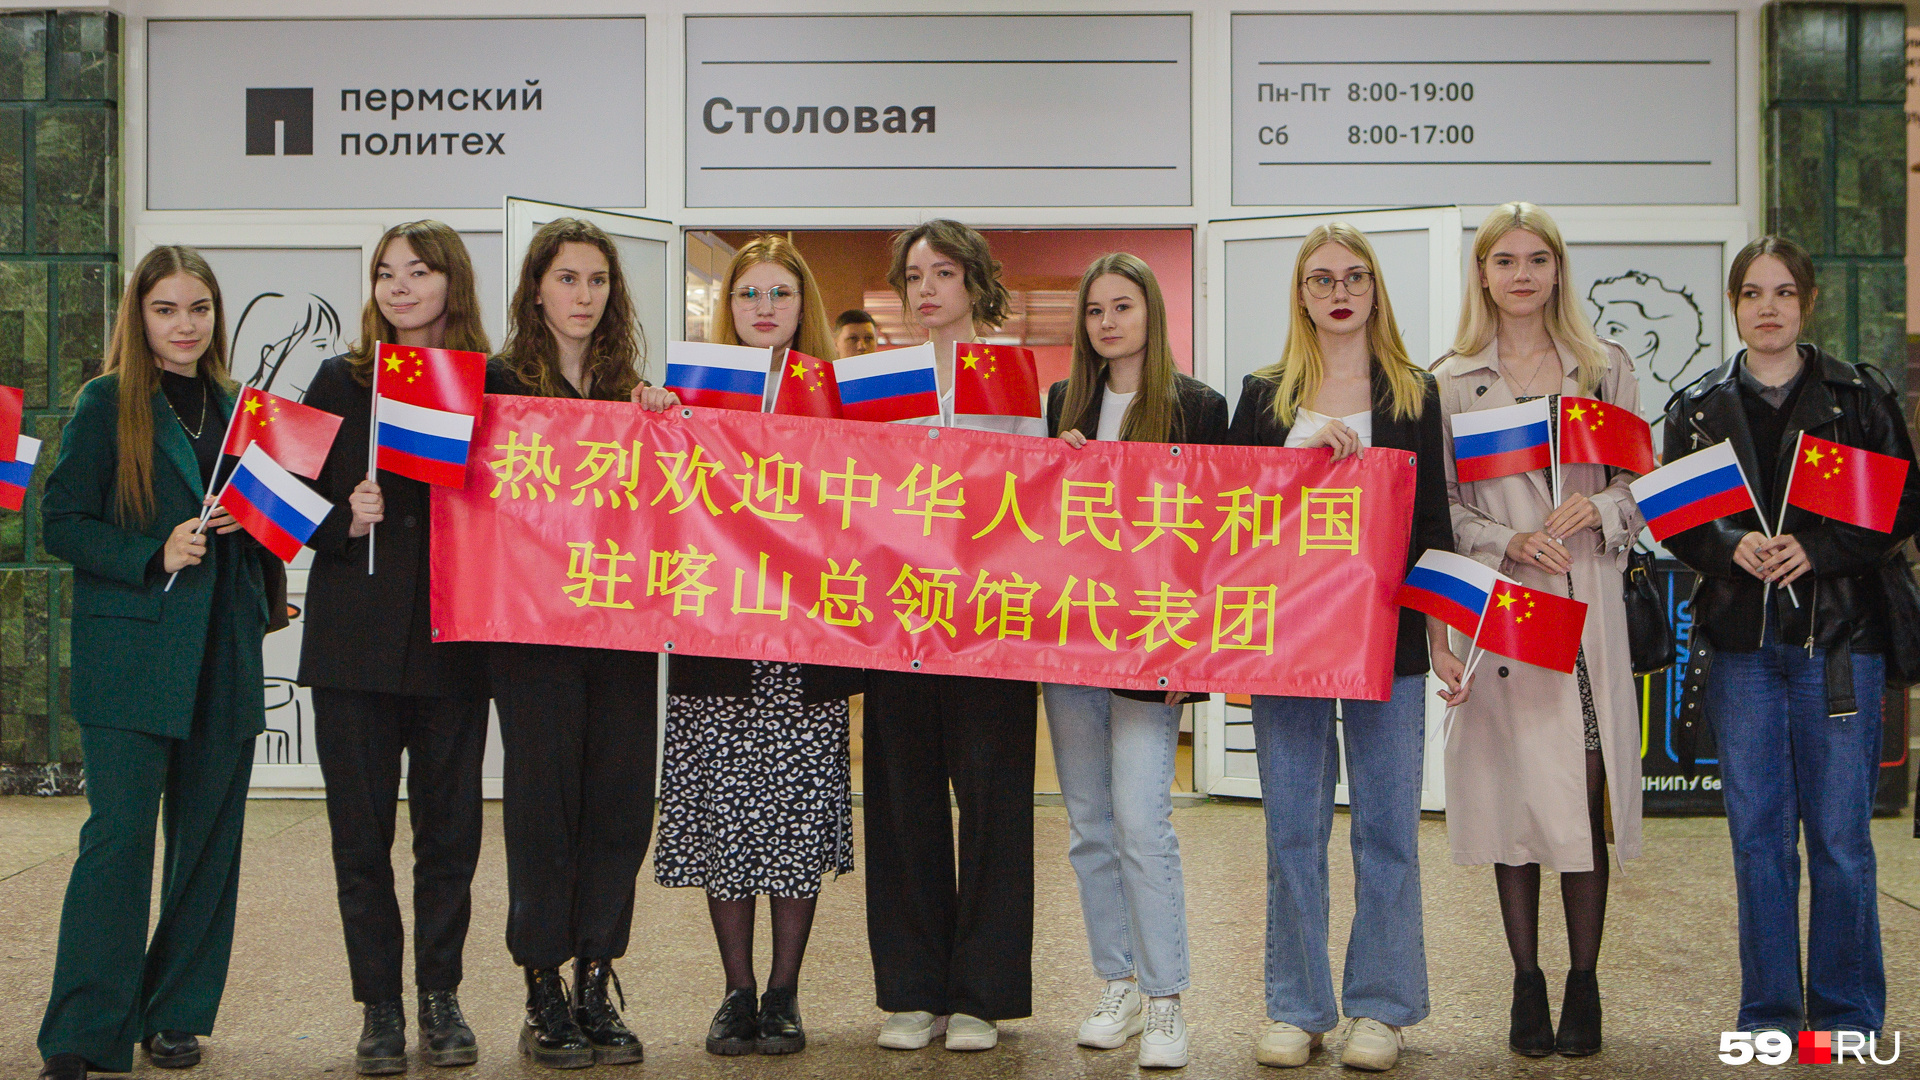 Консула встречали плакатом с надписью «Добро пожаловать» на китайском языке